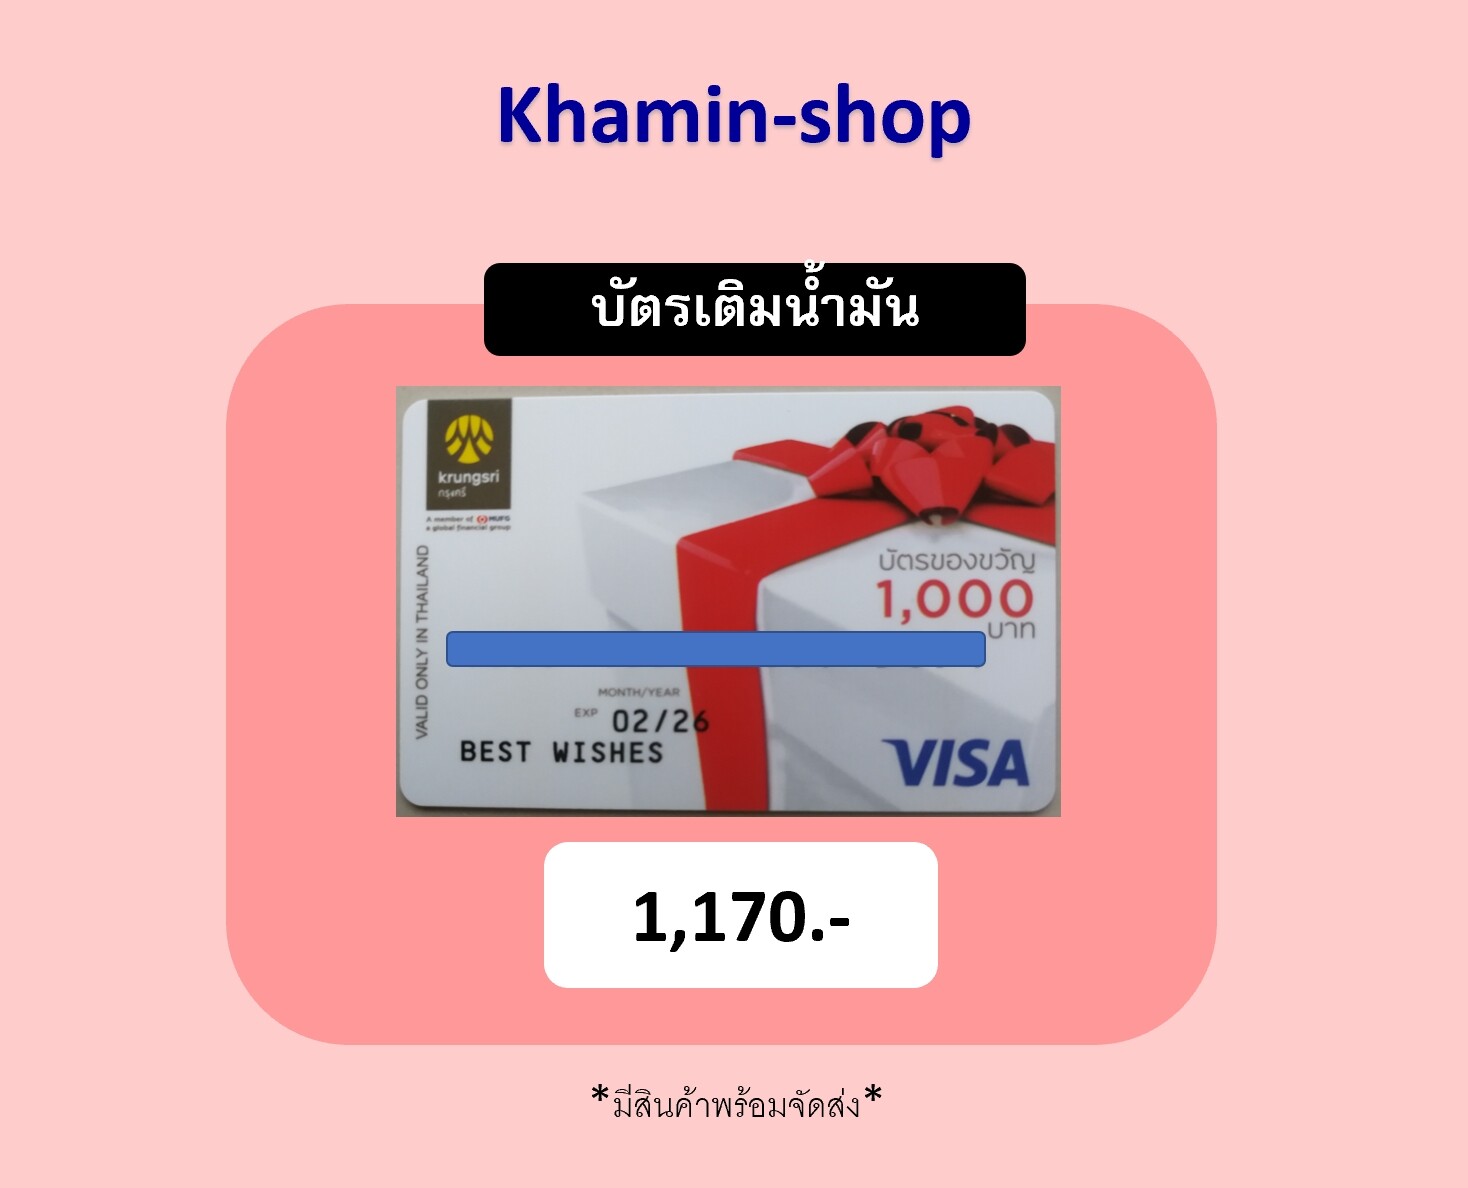 บัตรเติมน้ำมัน บัตร Gift Card ใช้เติมน้ำมันได้ทุกปั๊มที่รับบัตรเครดิต  มูลค่าในบัตร1,000บาท​ บัตรหมดอายุ 07/26 บัตรของขวัญ - Khamin-Shop - Thaipick